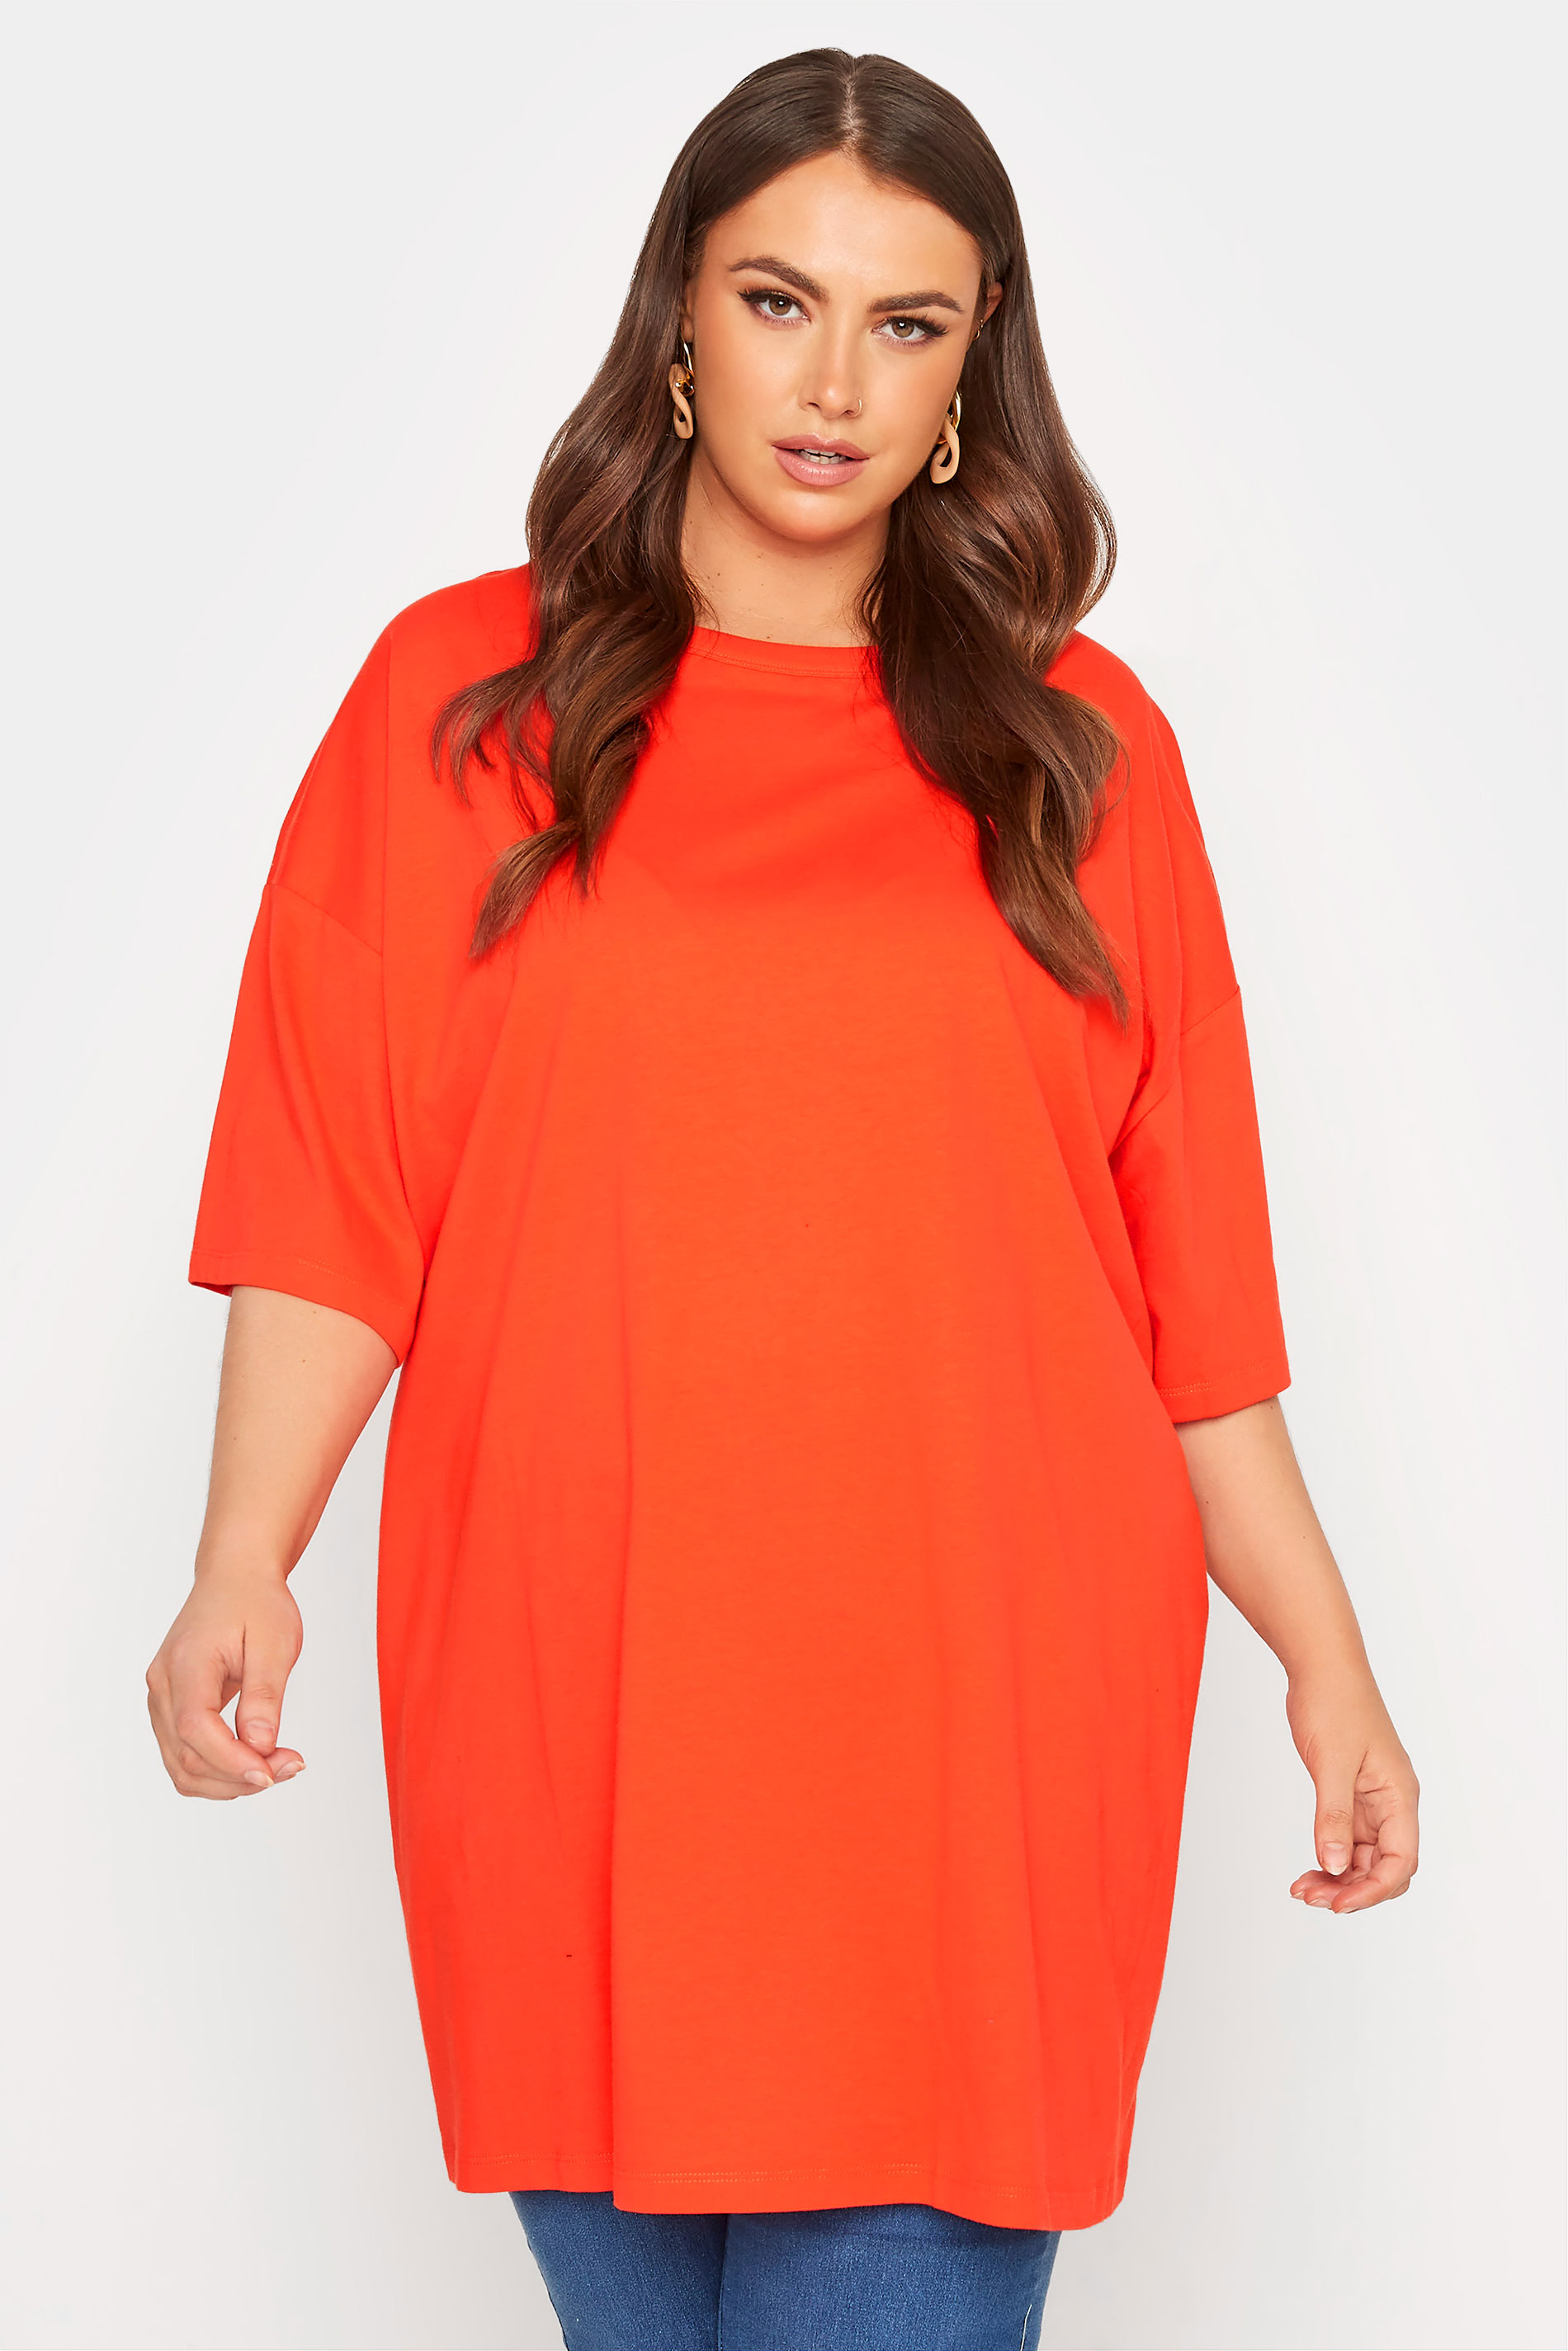 Grande taille  Tops Grande taille  T-Shirts | T-Shirt Orange Fluo en Jersey Design Oversize - RJ30046